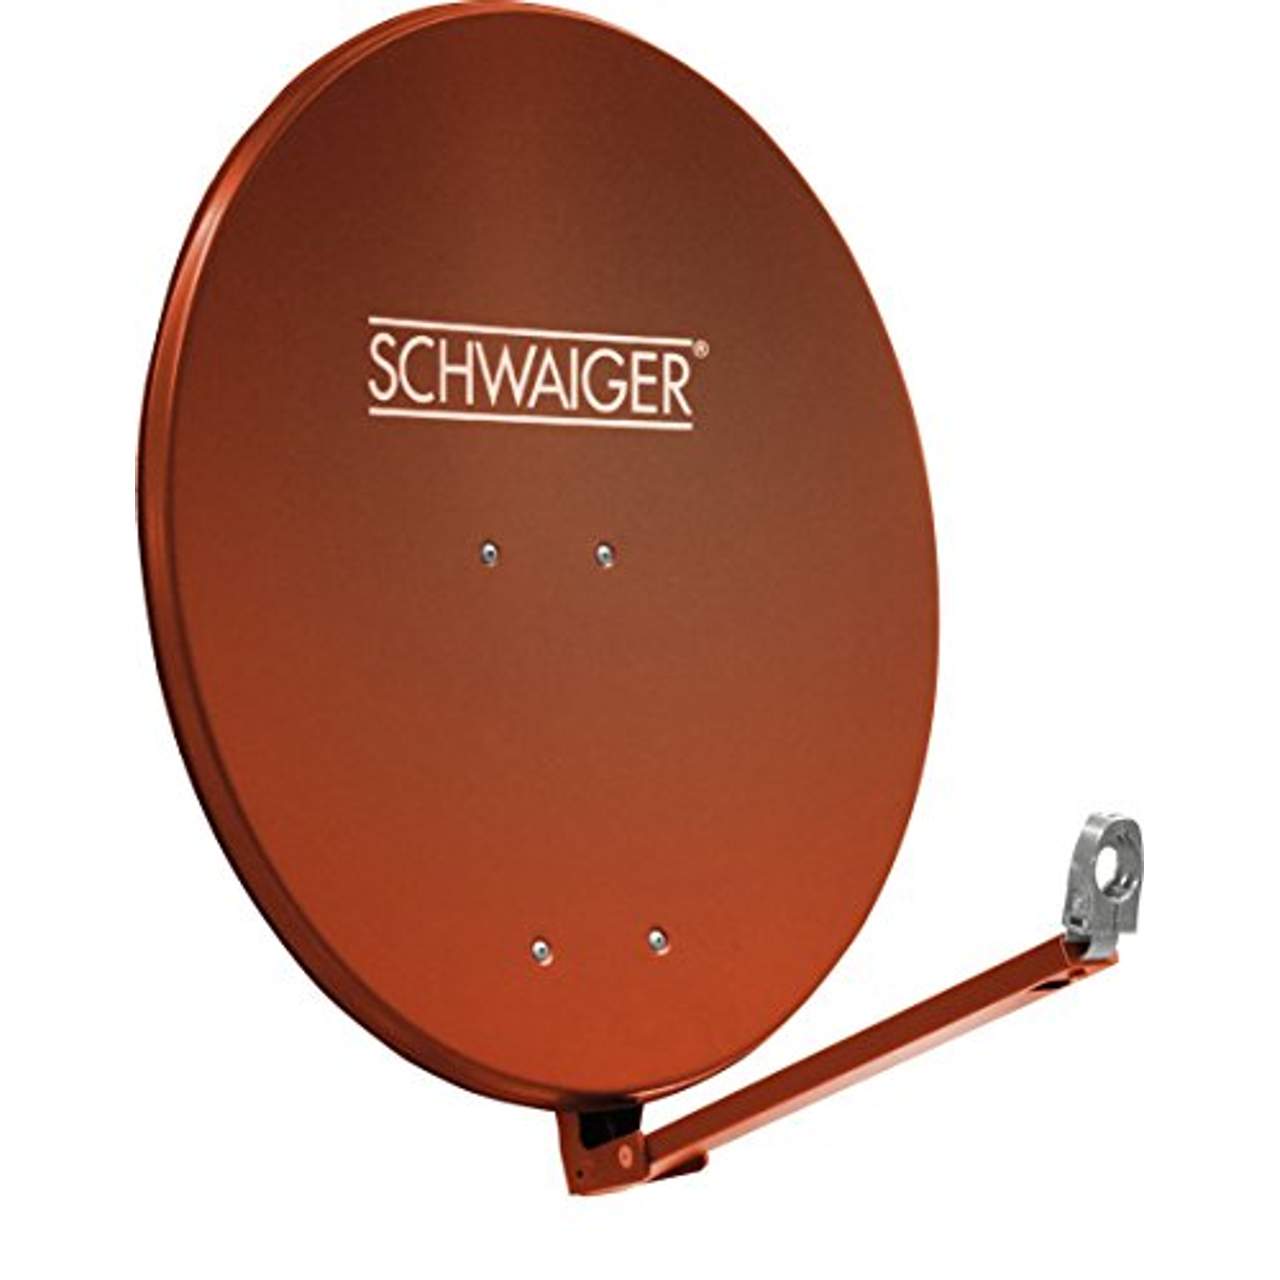 SCHWAIGER -265- Satellitenschüssel Sat Antenne